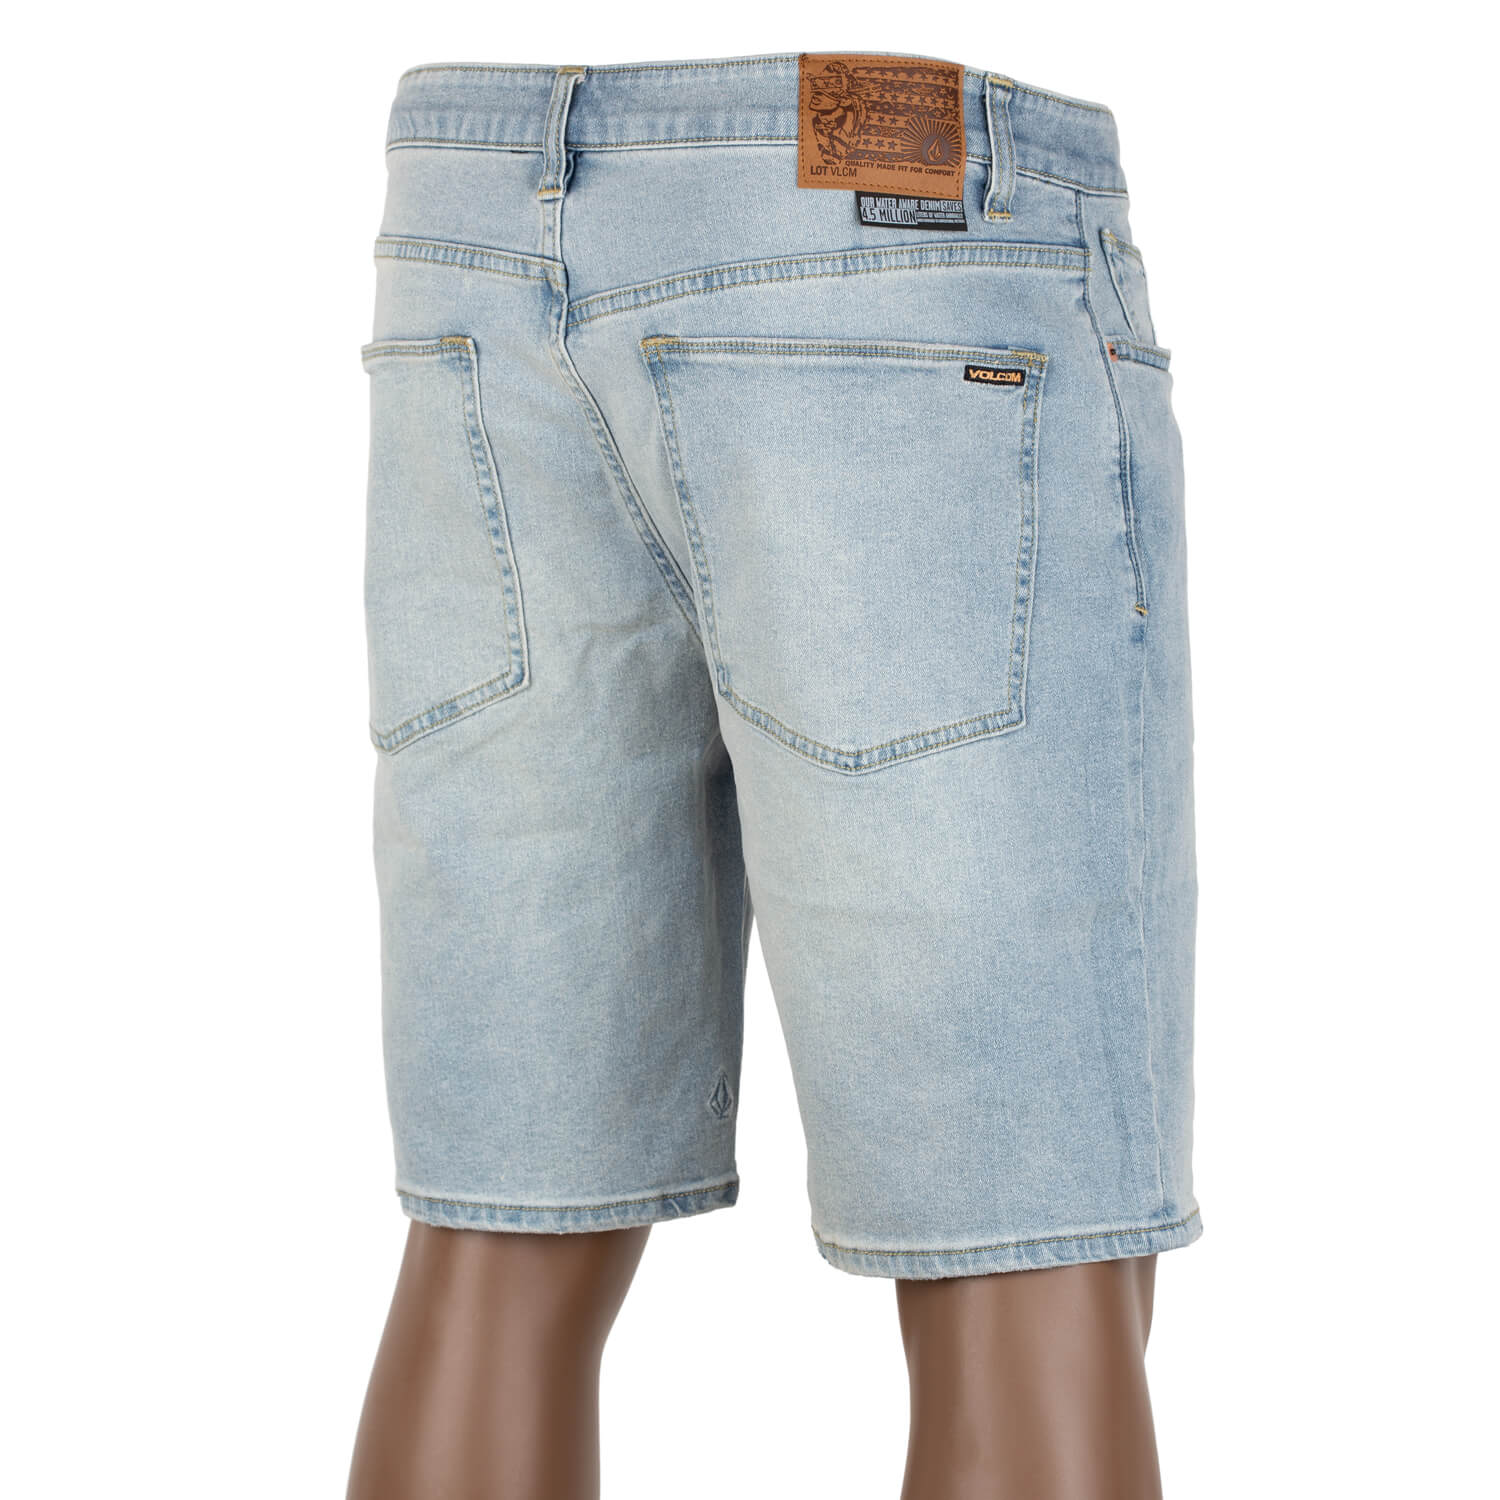 Solver Denim Short indigo vintage - Herren Jeans Short |